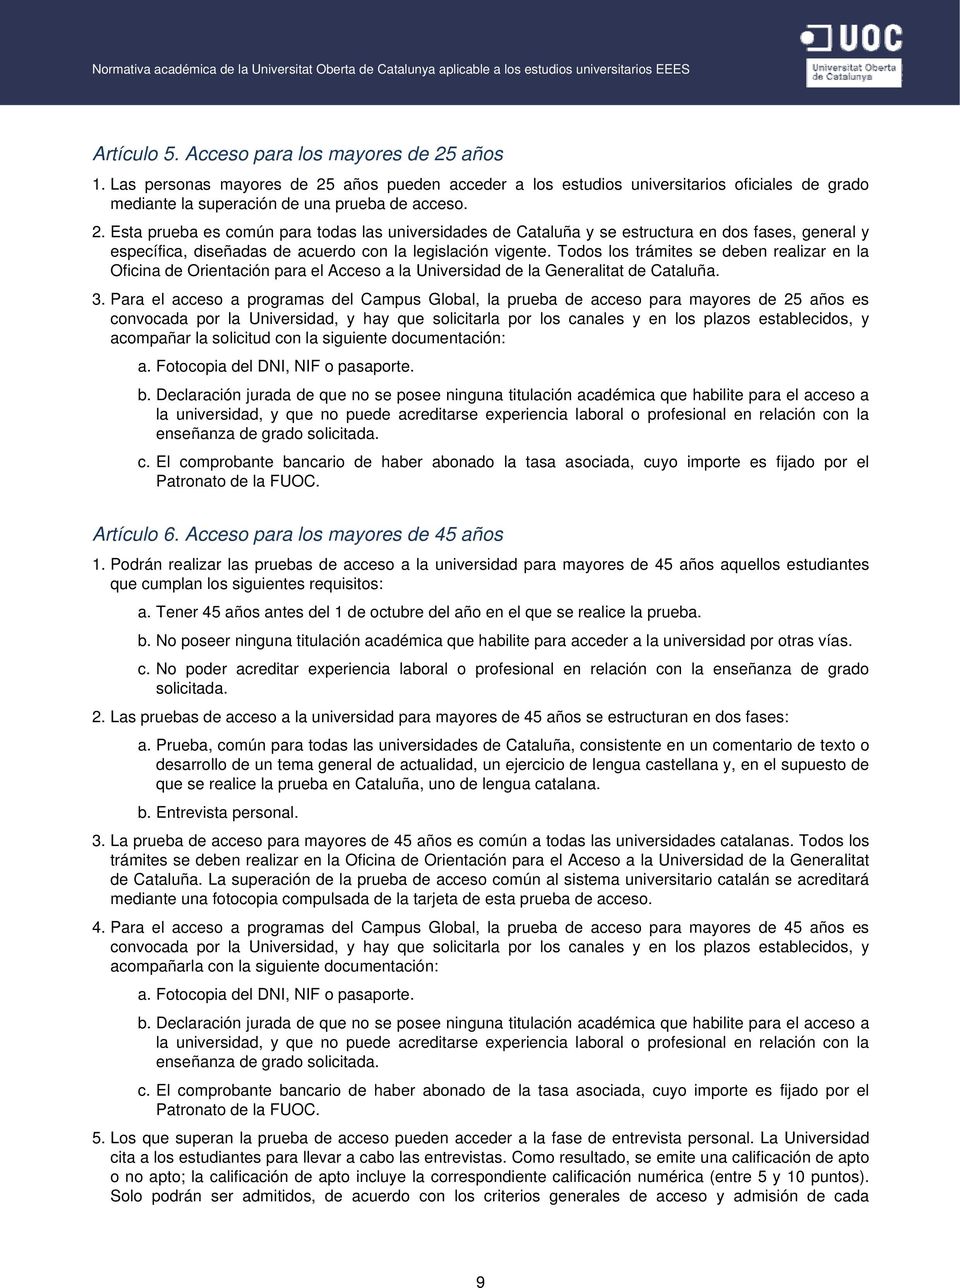 Todos los trámites se deben realizar en la Oficina de Orientación para el Acceso a la Universidad de la Generalitat de Cataluña. 3.